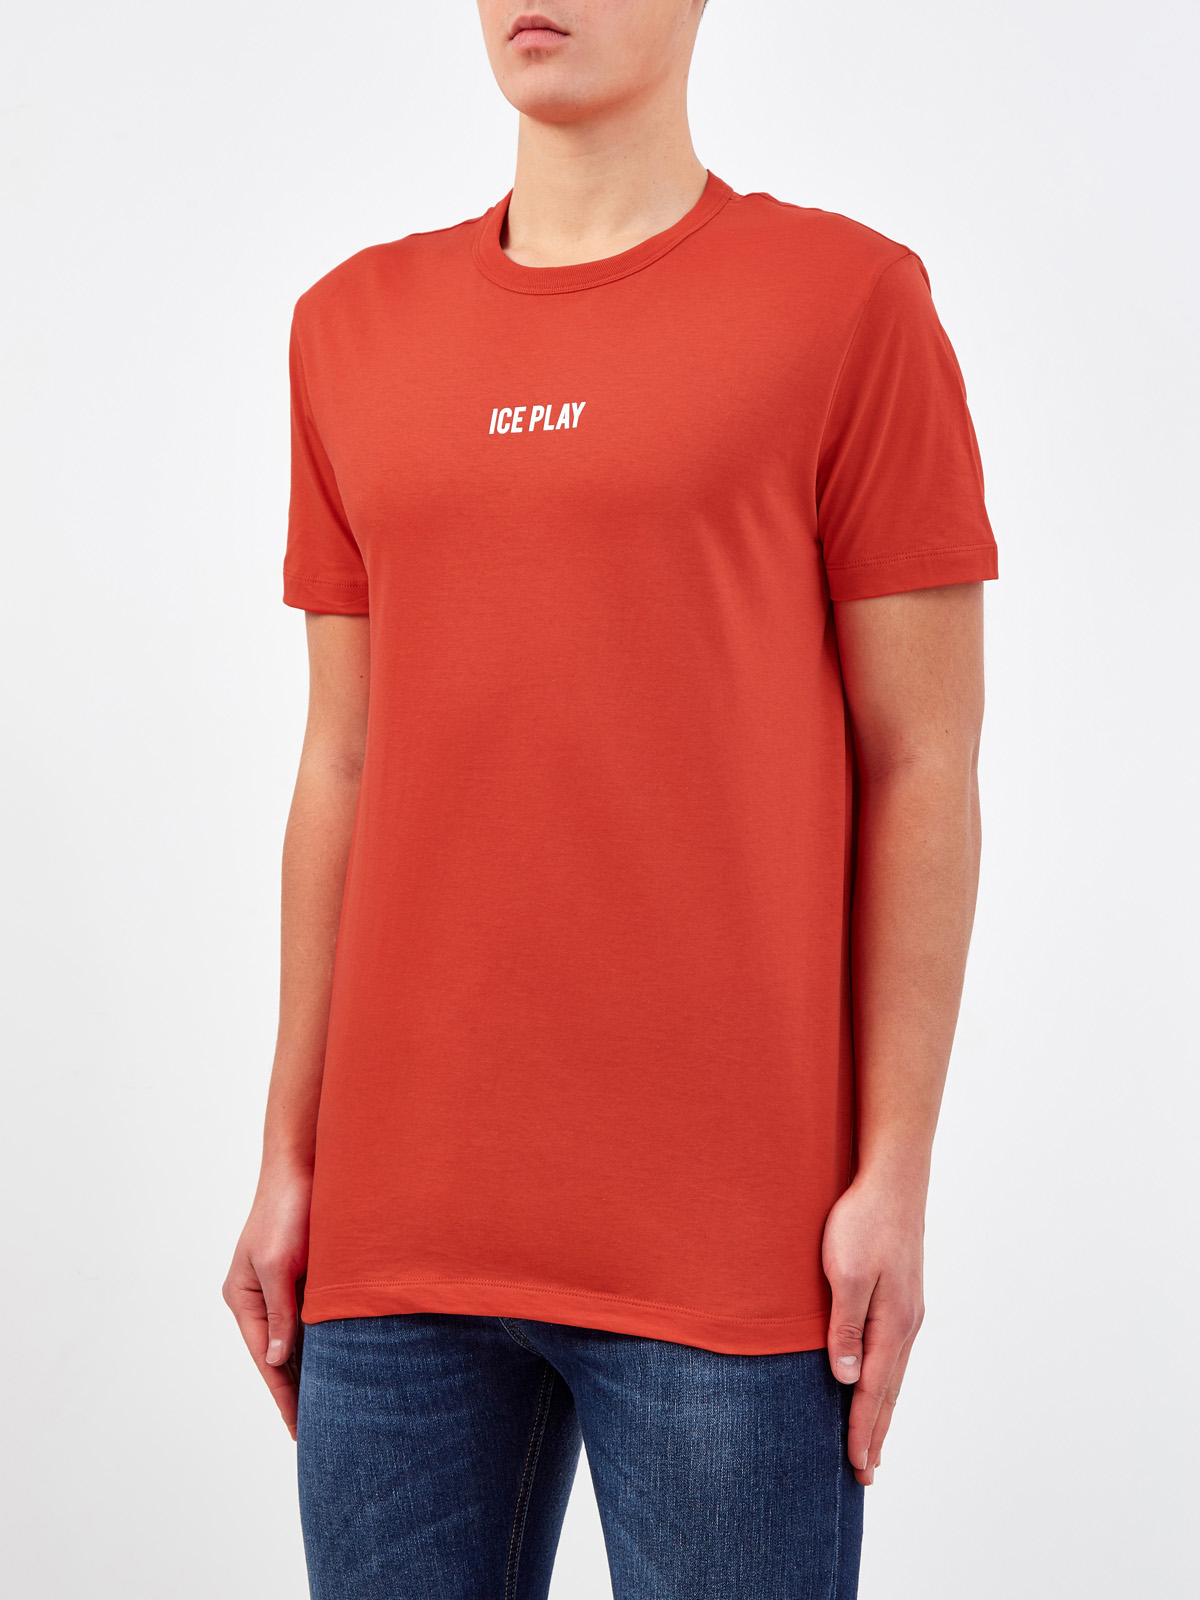 Хлопковая футболка с контрастным логотипом бренда ICE PLAY, цвет оранжевый, размер L - фото 3